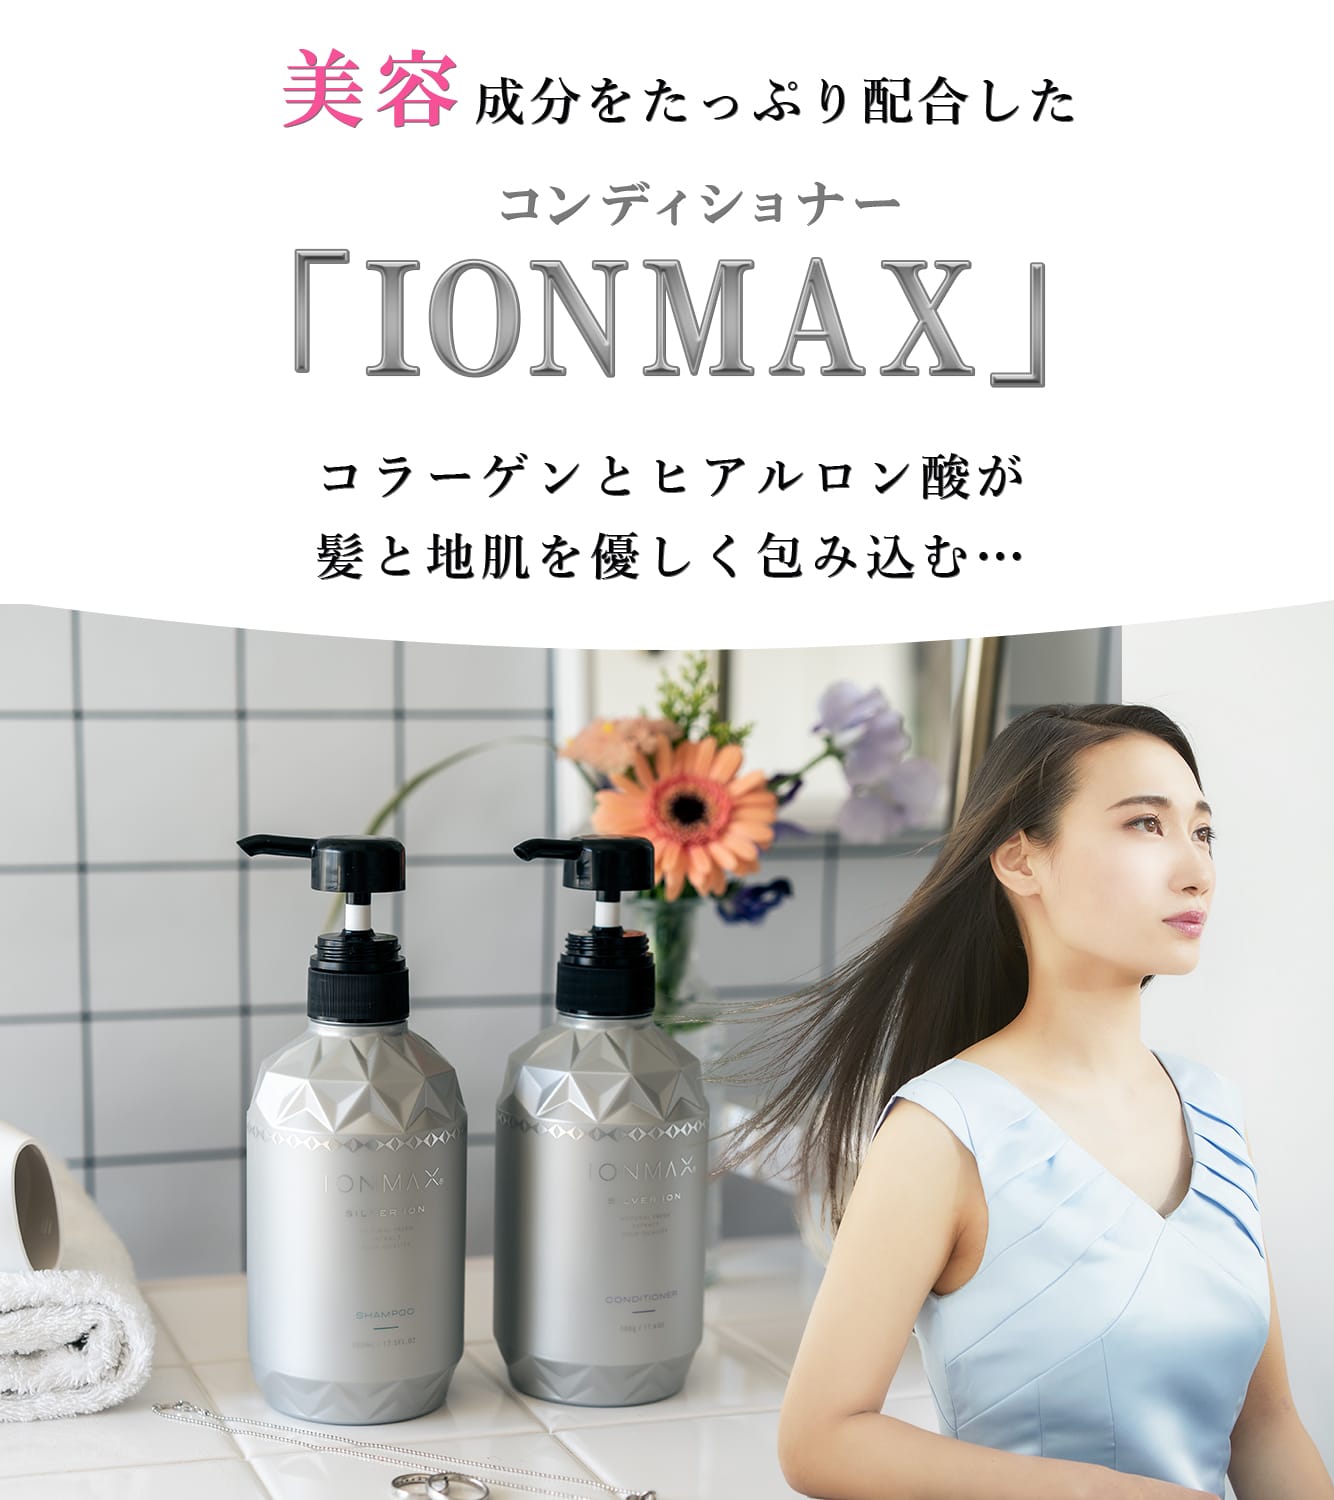 美容成分をたっぷり配合したコンディショナー「IONMAX」 コラーゲンとヒアルロン酸が髪と地肌を優しく包み込む…